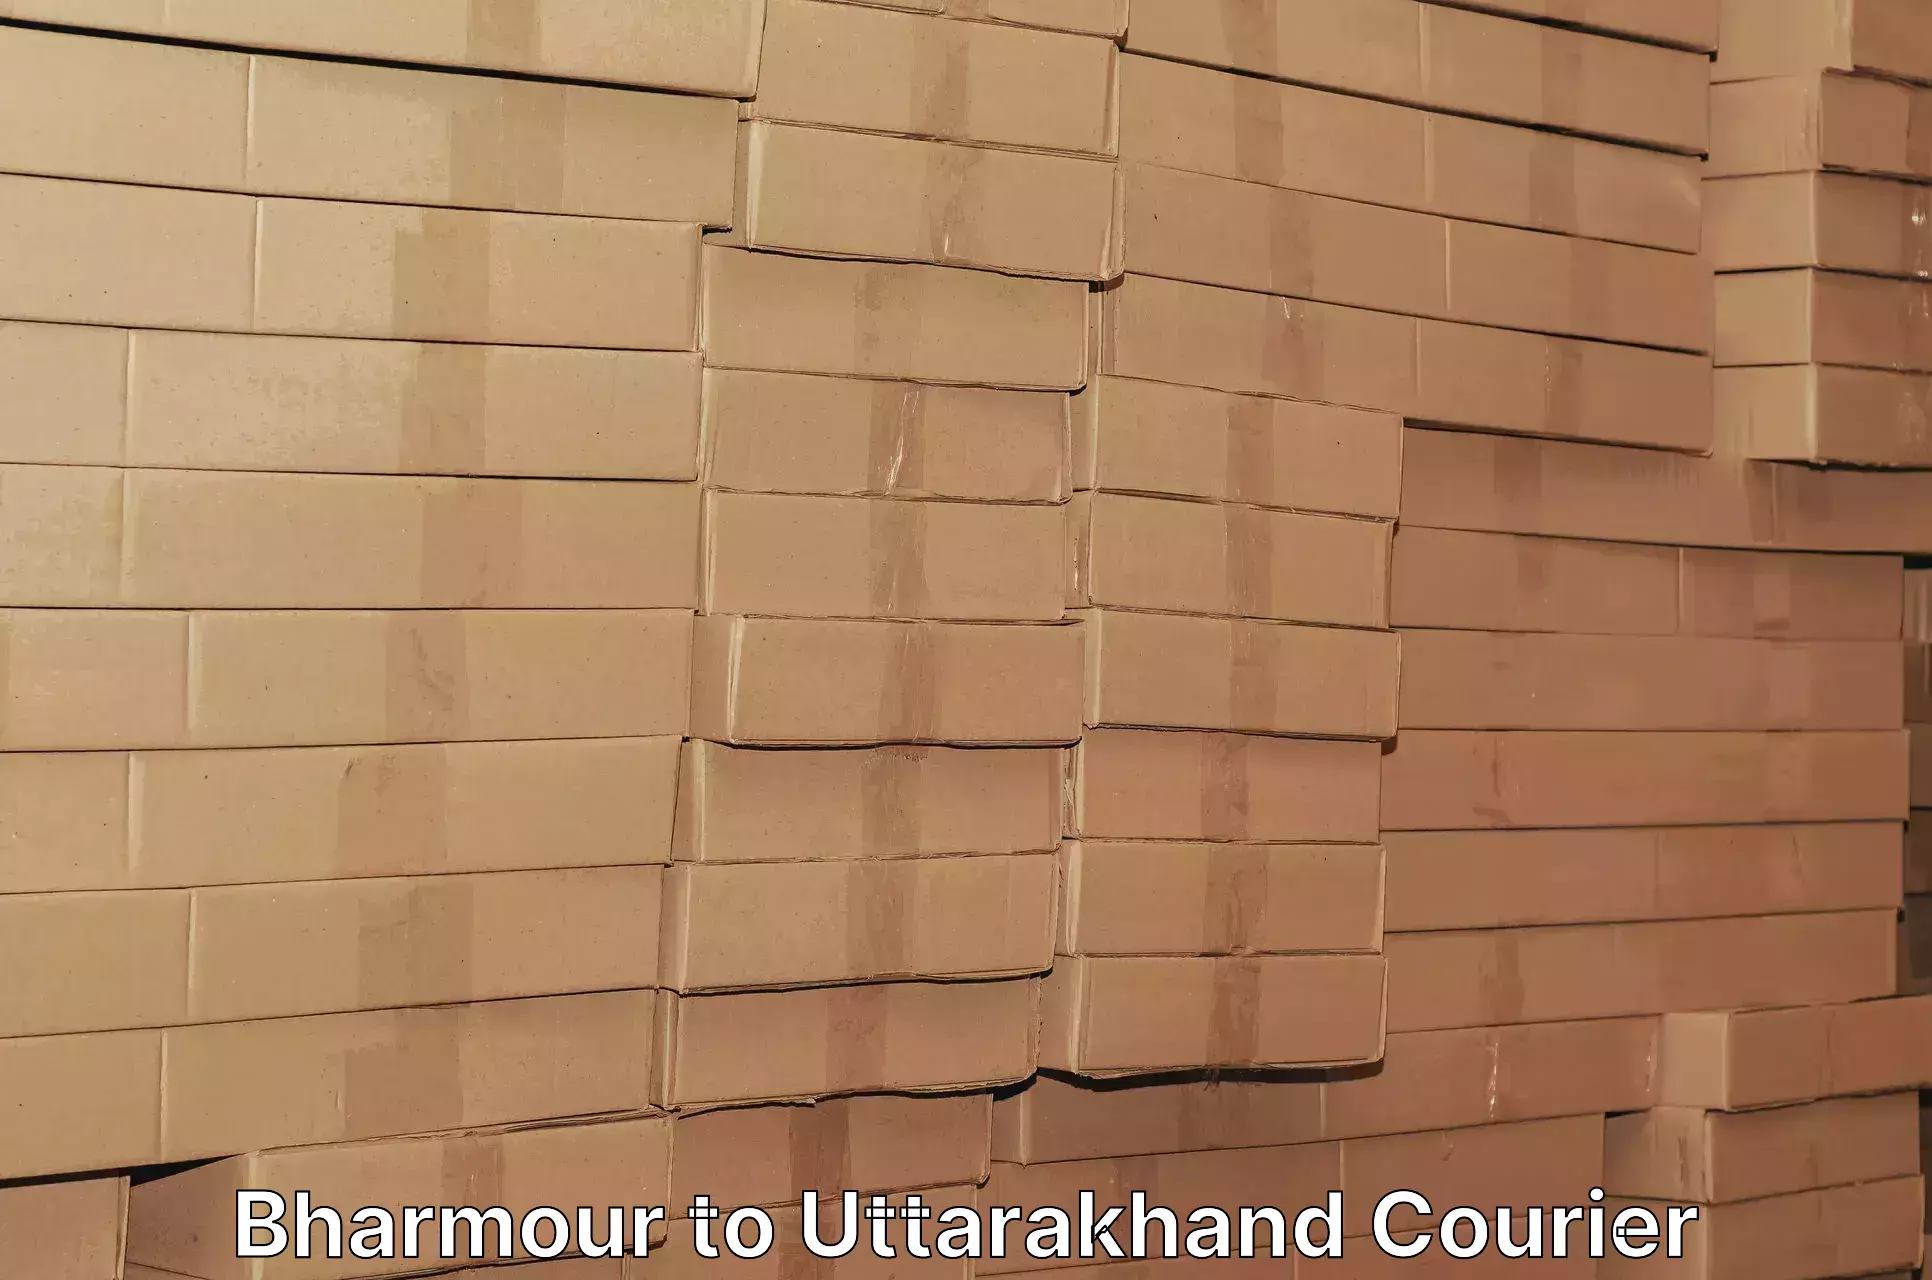 Urgent courier needs Bharmour to Rudraprayag